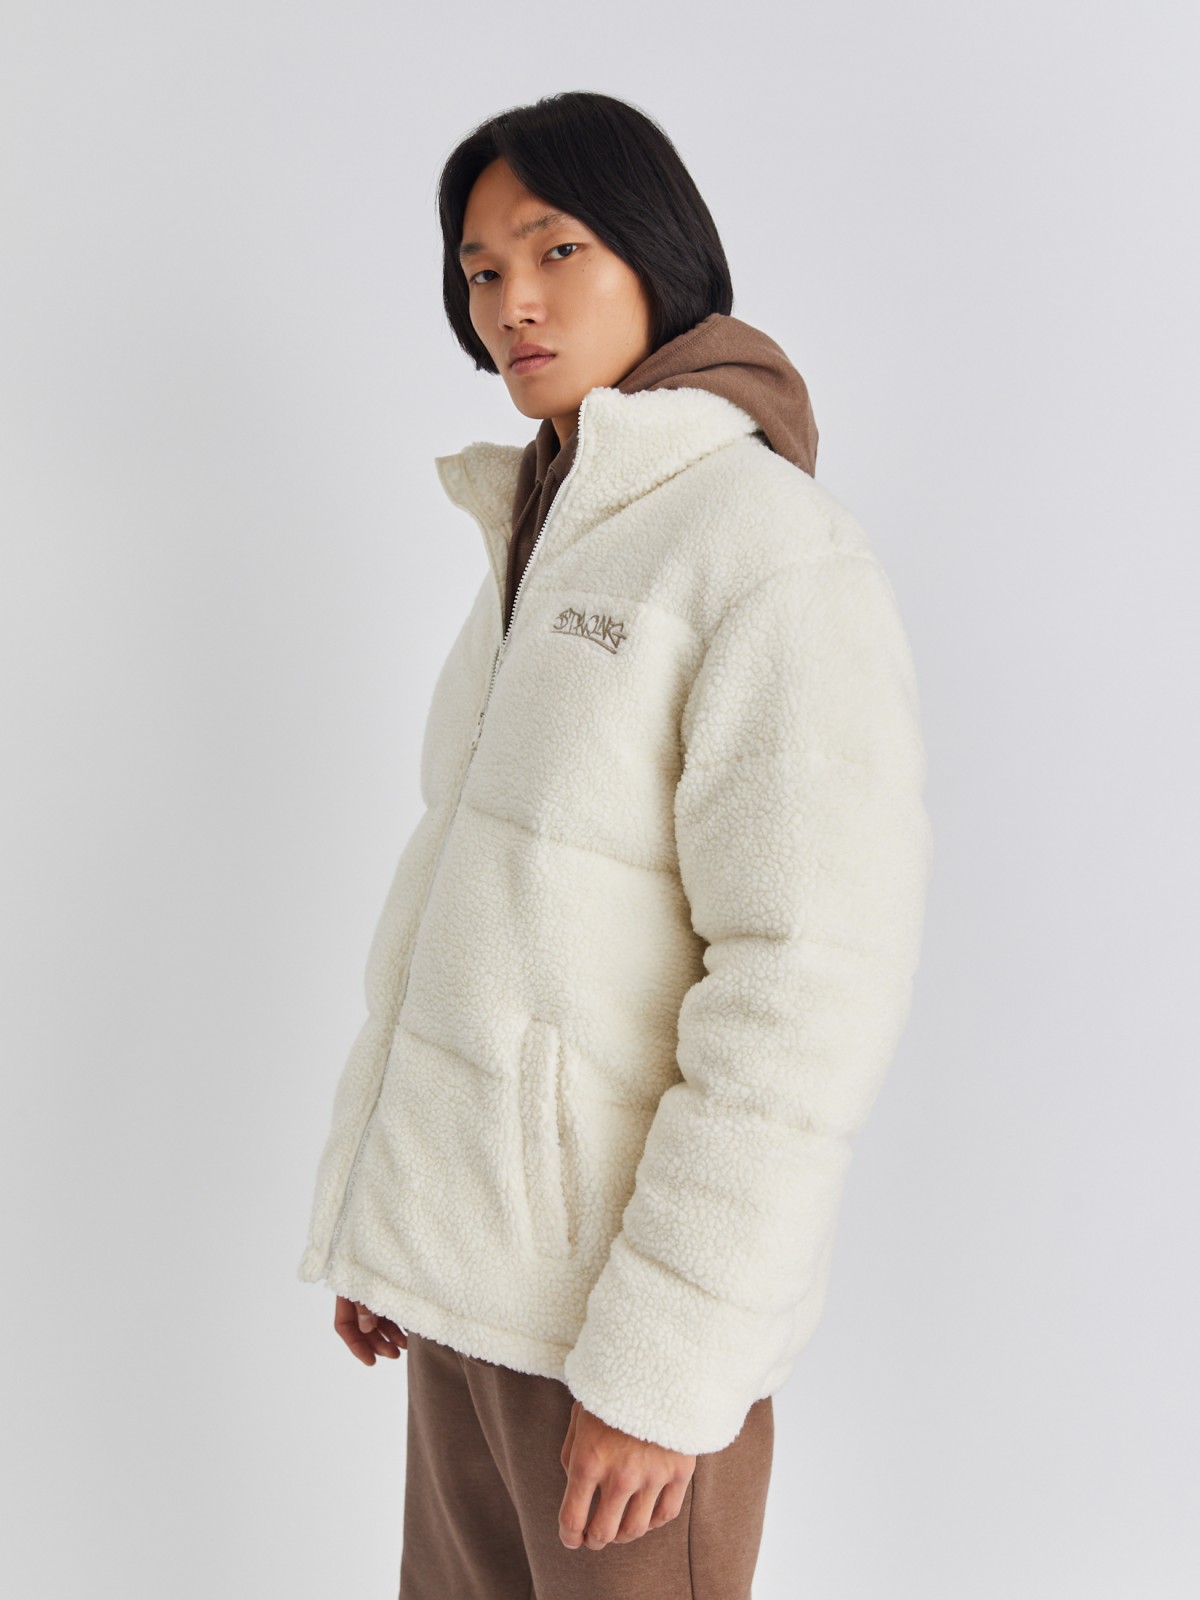 Тёплая куртка из экомеха с воротником-стойкой zolla 013425502024, цвет молоко, размер S/M - фото 4